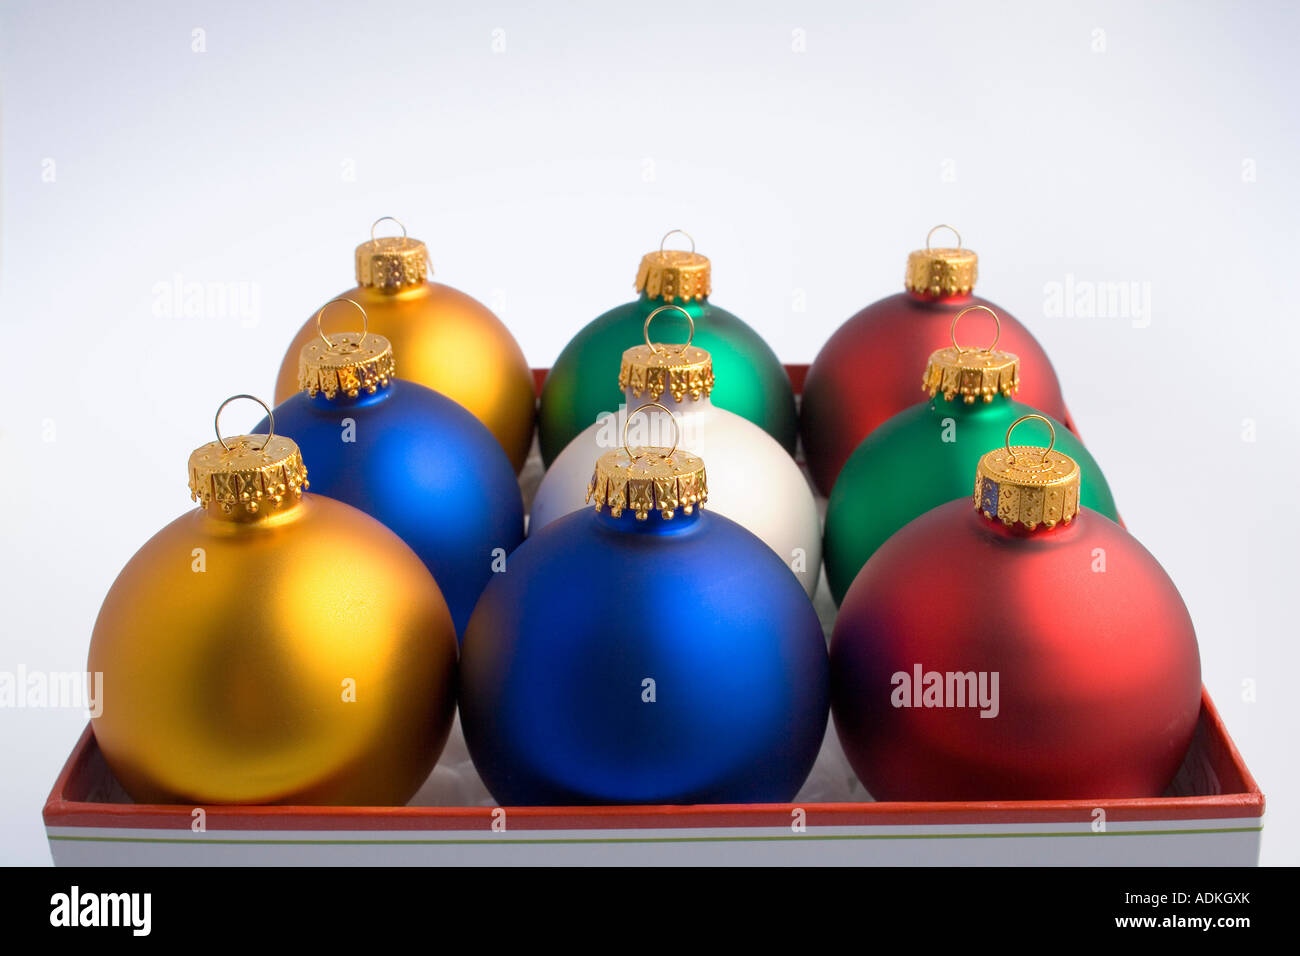 Arbre de Noël ornements ampoule désaturée dans Joyeuses Fêtes fort studio portrait Banque D'Images